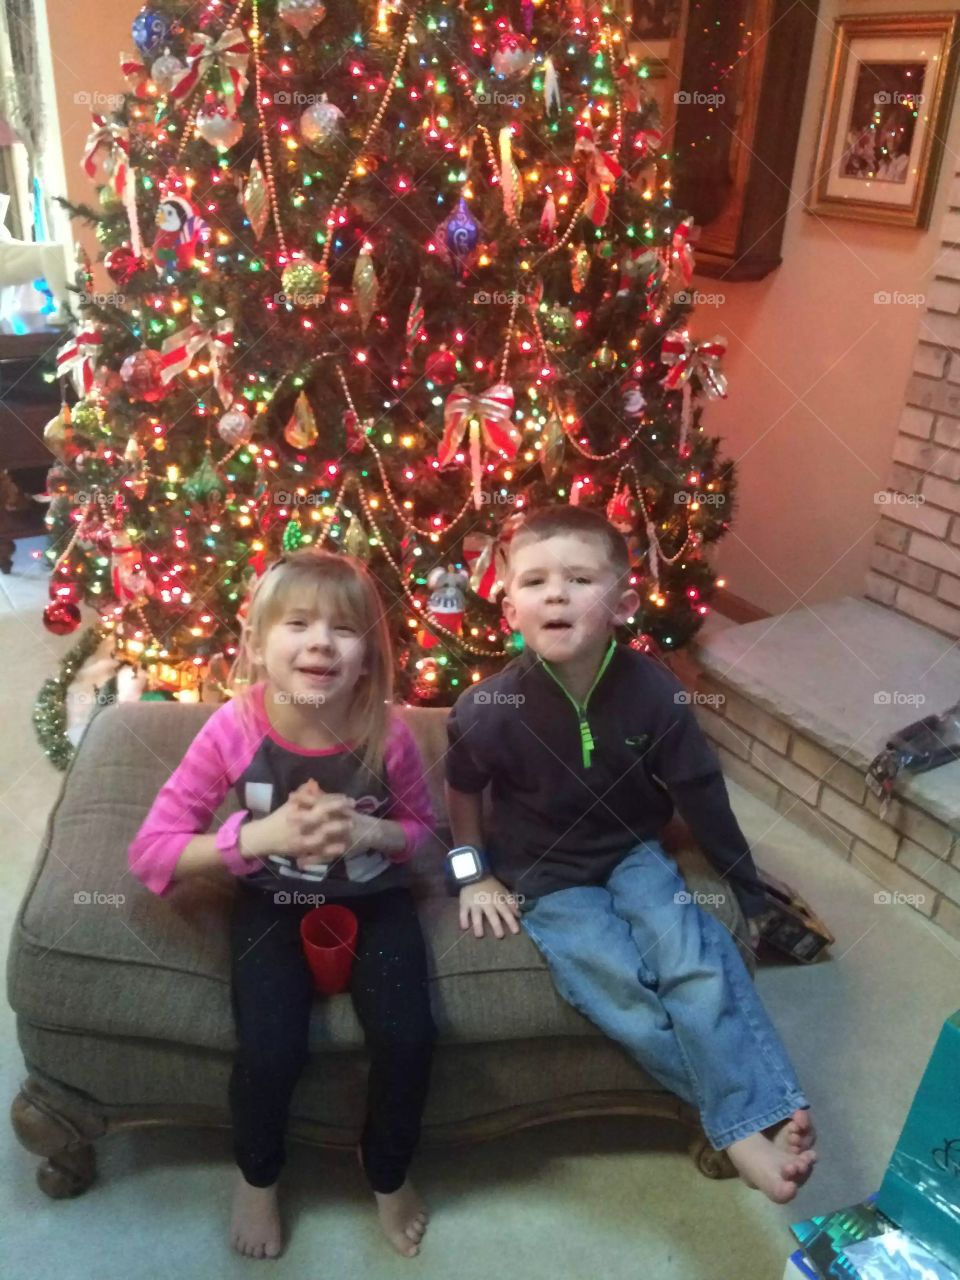 Kids at Christmas 🎄 